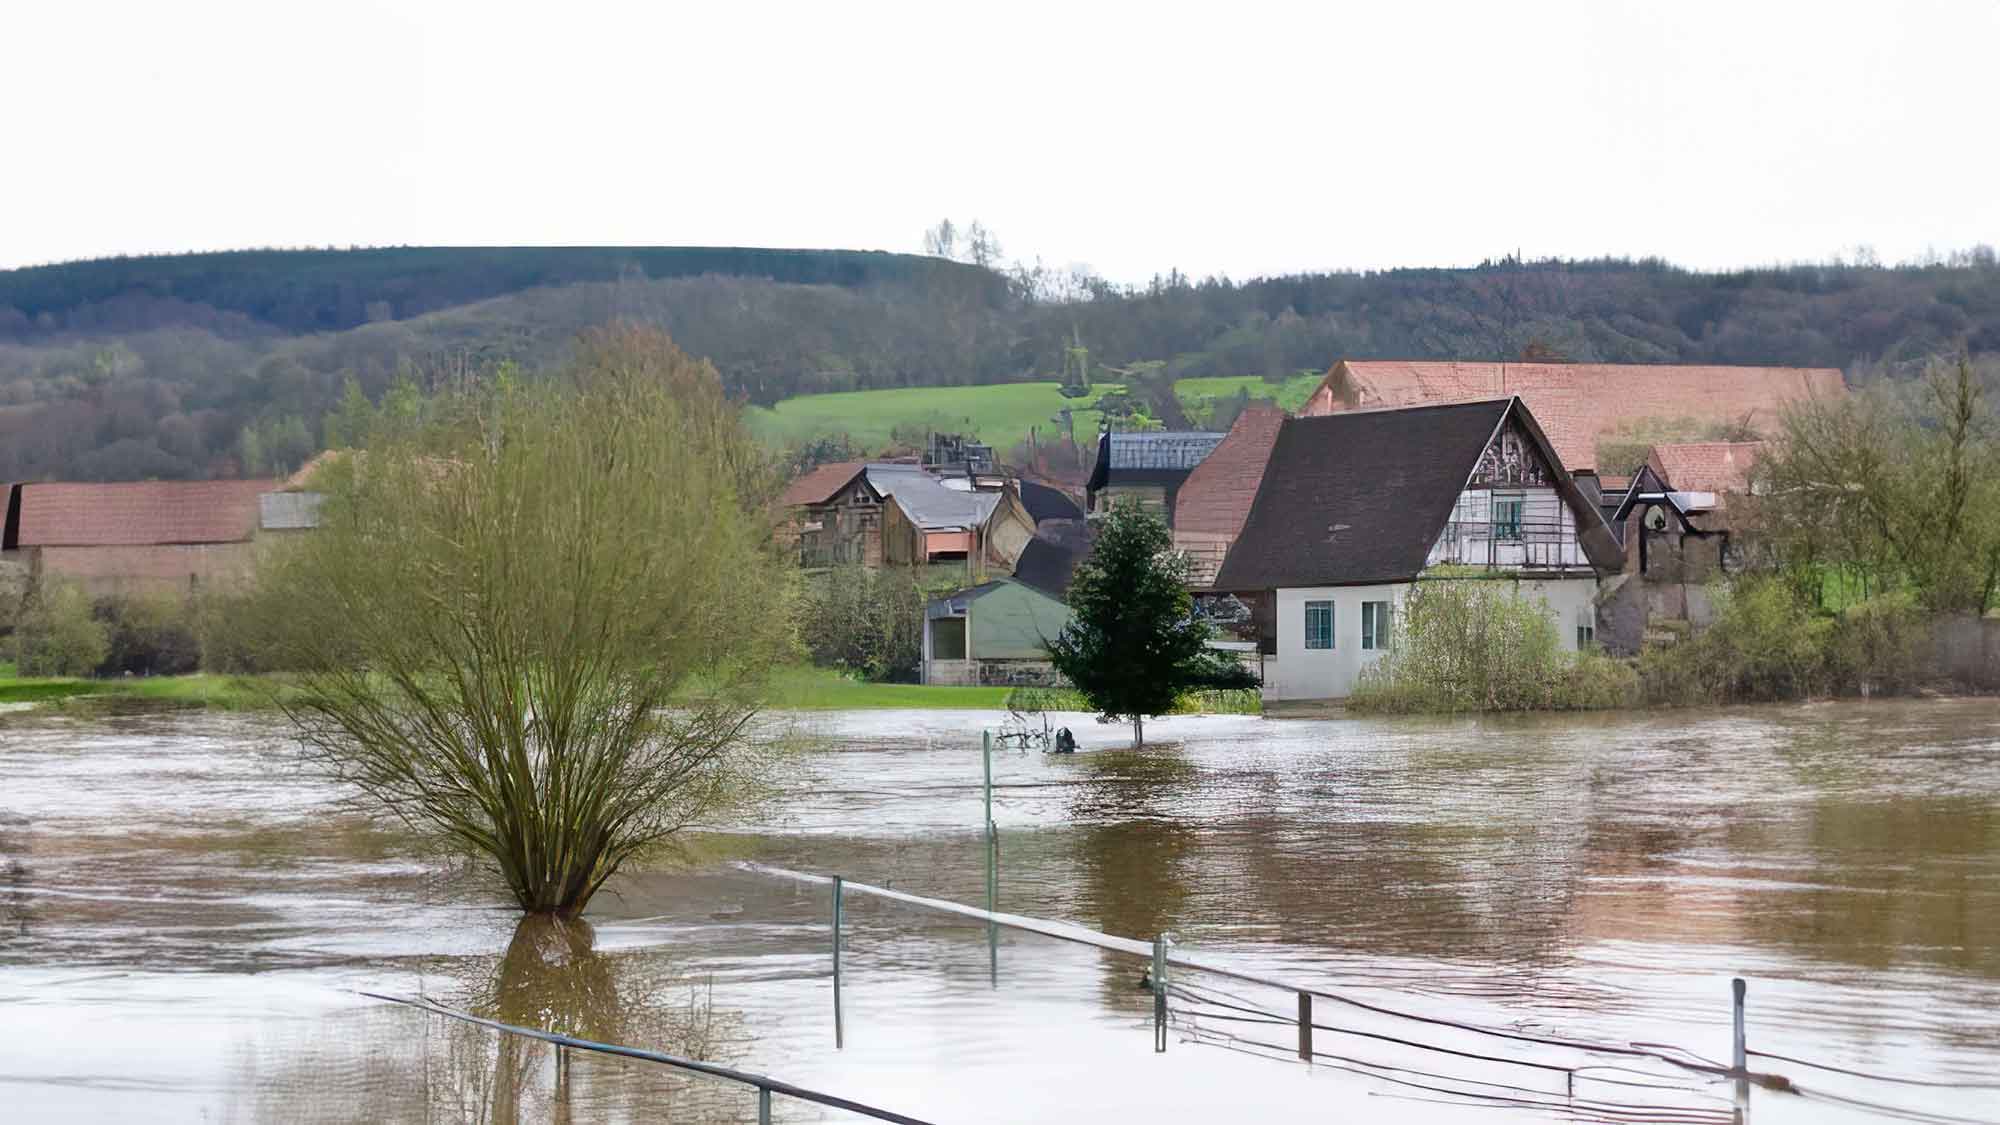 Hochwasser in Deutschland – was habe ich als Immobilienbesitzer jetzt zu beachten?